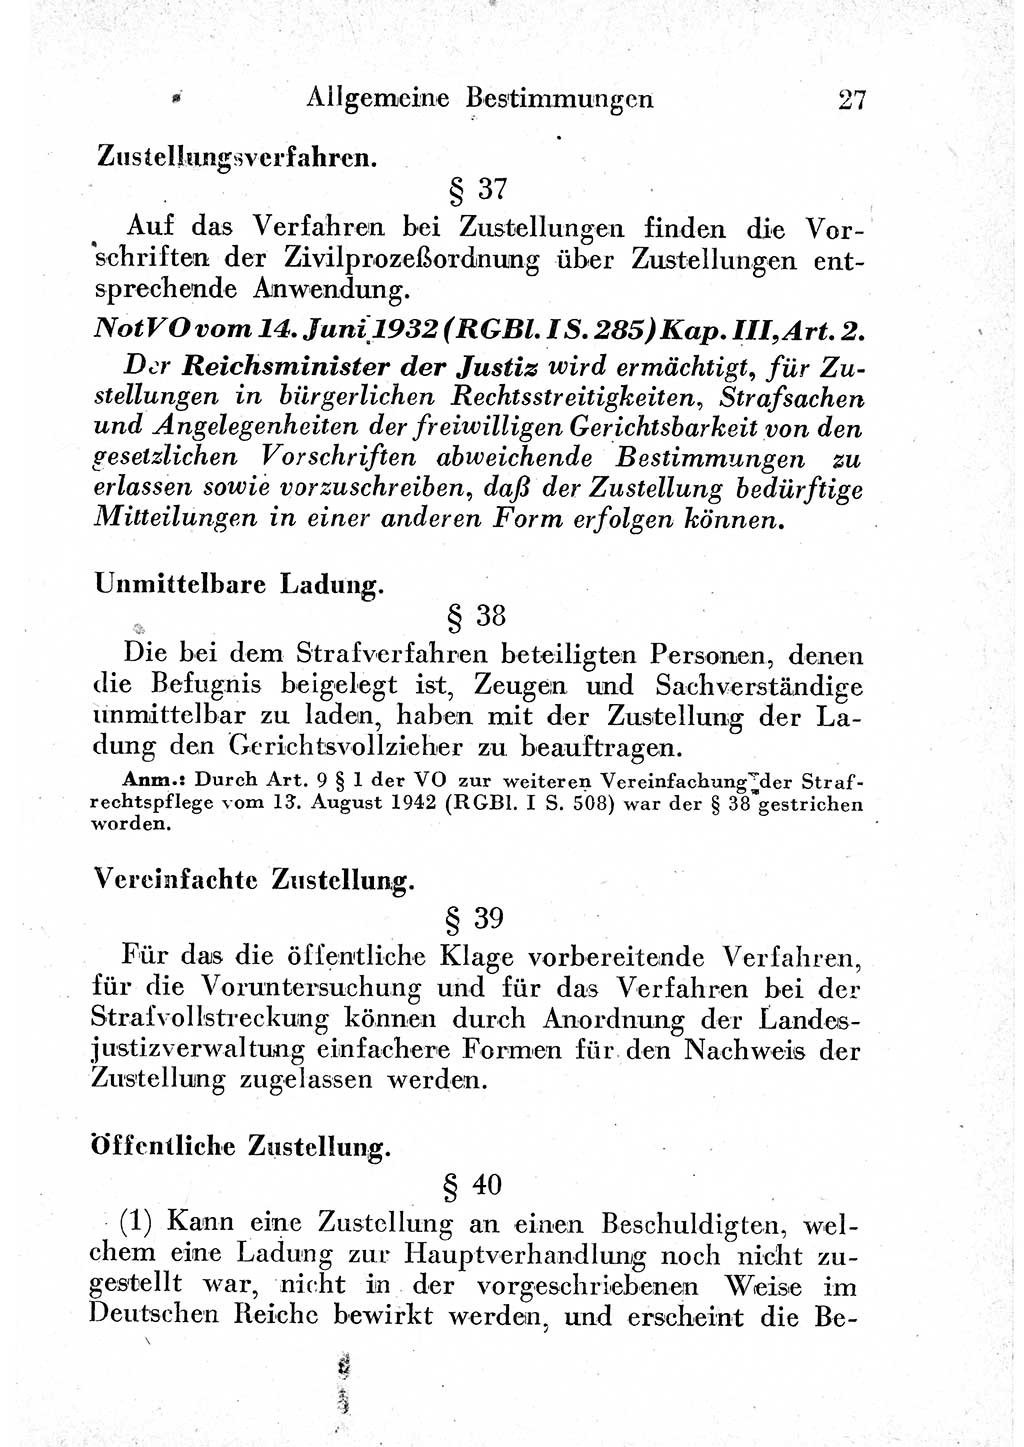 Strafprozeßordnung (StPO), Gerichtsverfassungsgesetz (GVG) und zahlreiche Nebengesetze der sowjetischen Besatzungszone (SBZ) in Deutschland 1949, Seite 27 (StPO GVG Ges. SBZ Dtl. 1949, S. 27)